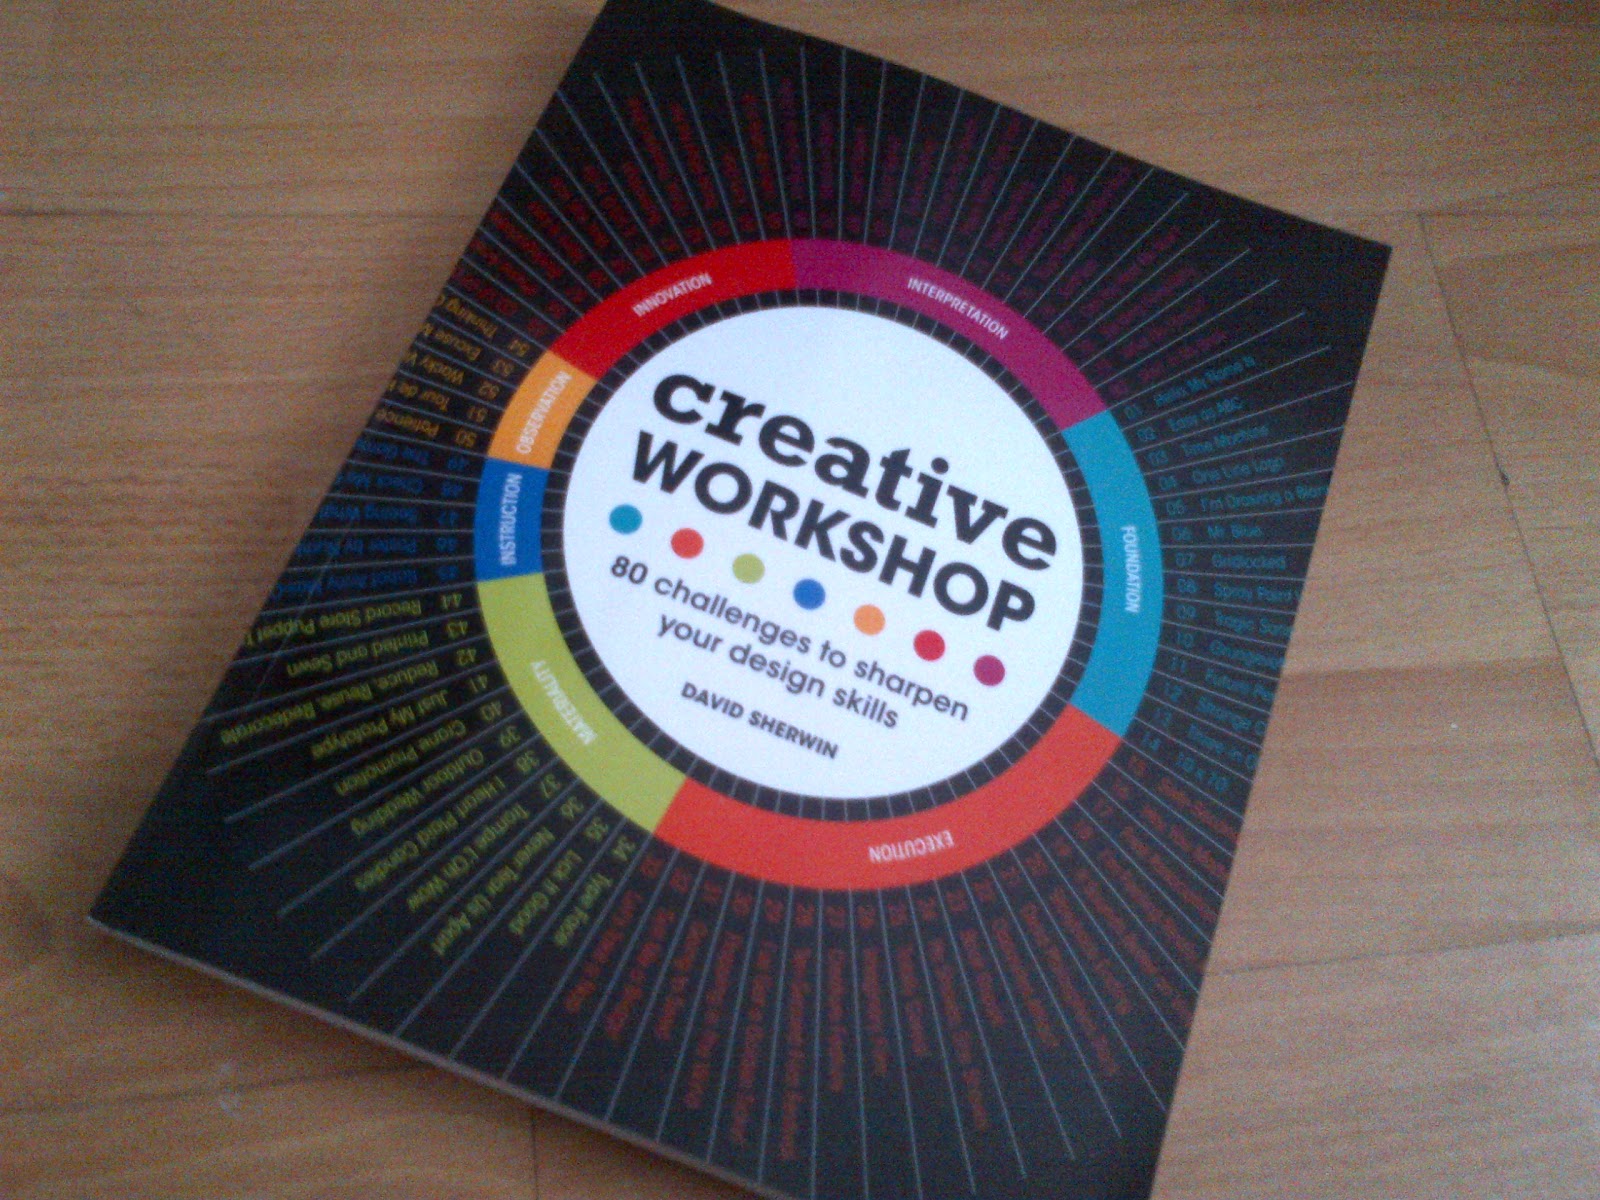 Creative Workshop: 80 Challenges to Sharpen Your Design Skills (graphic designer books)